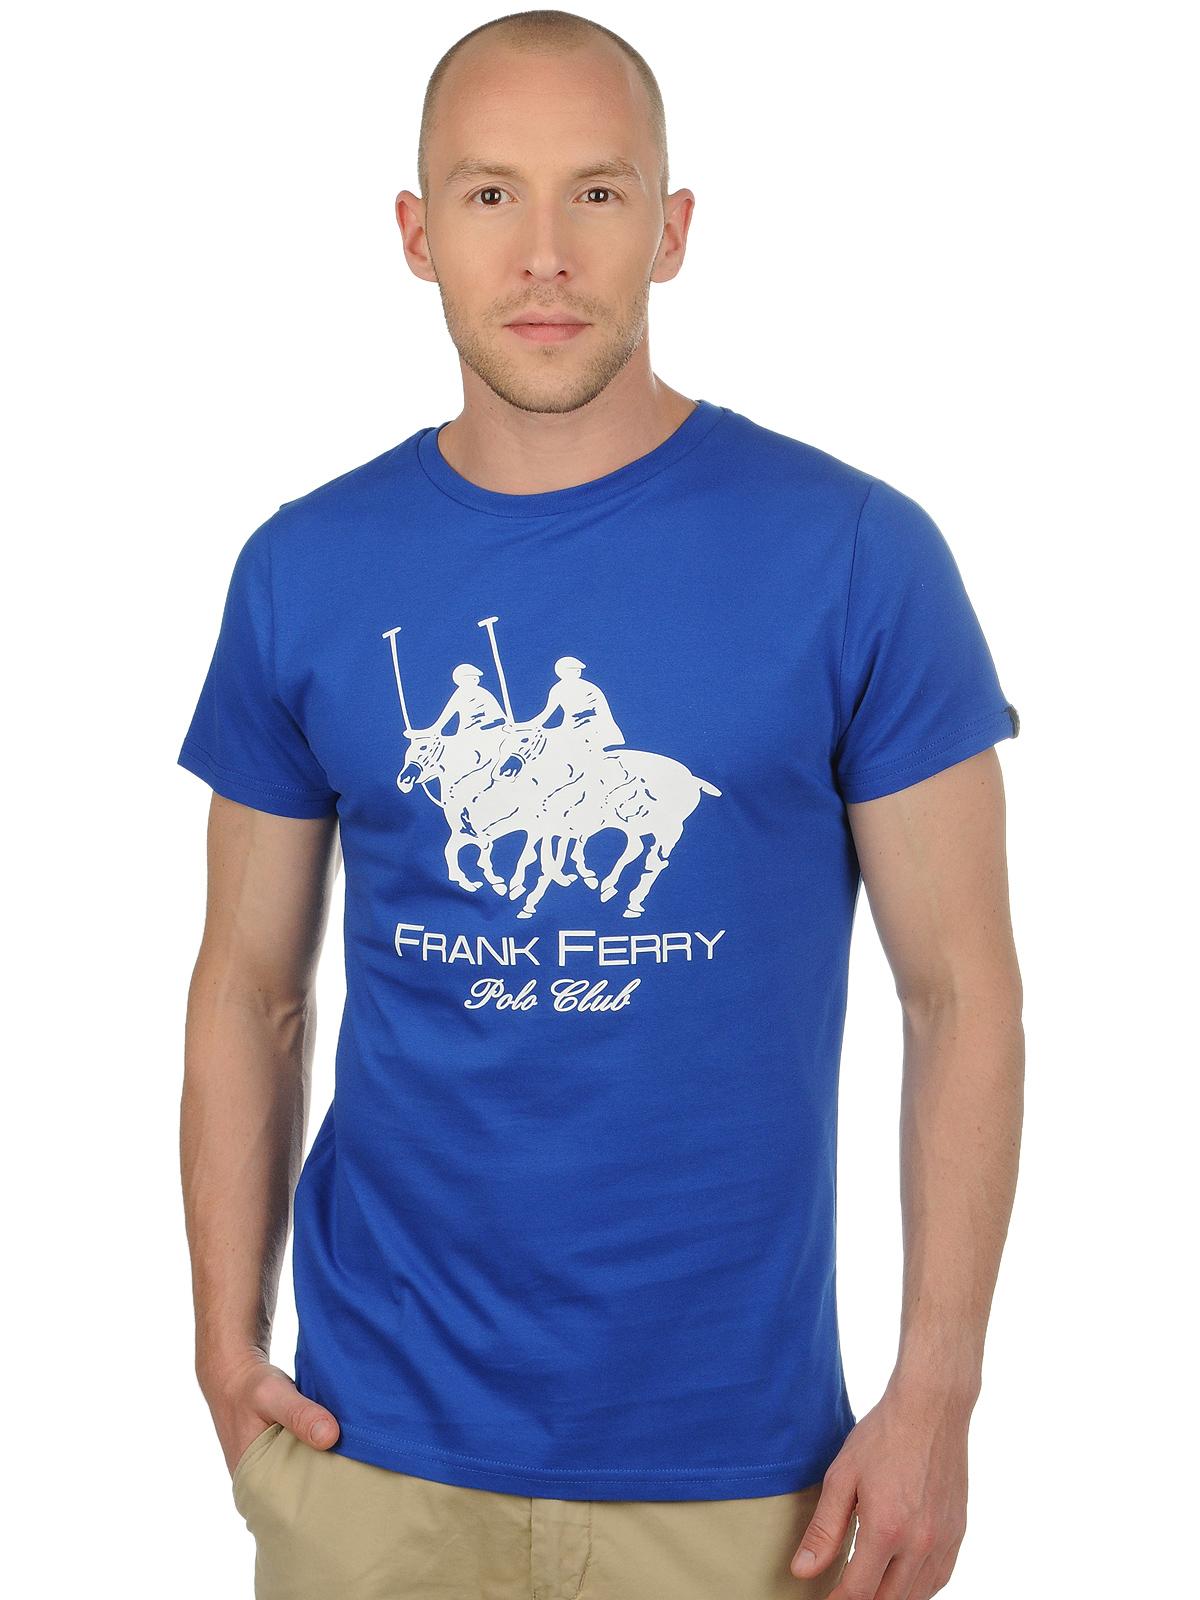 Foto Frank Ferry Polo Club Camiseta azul XL